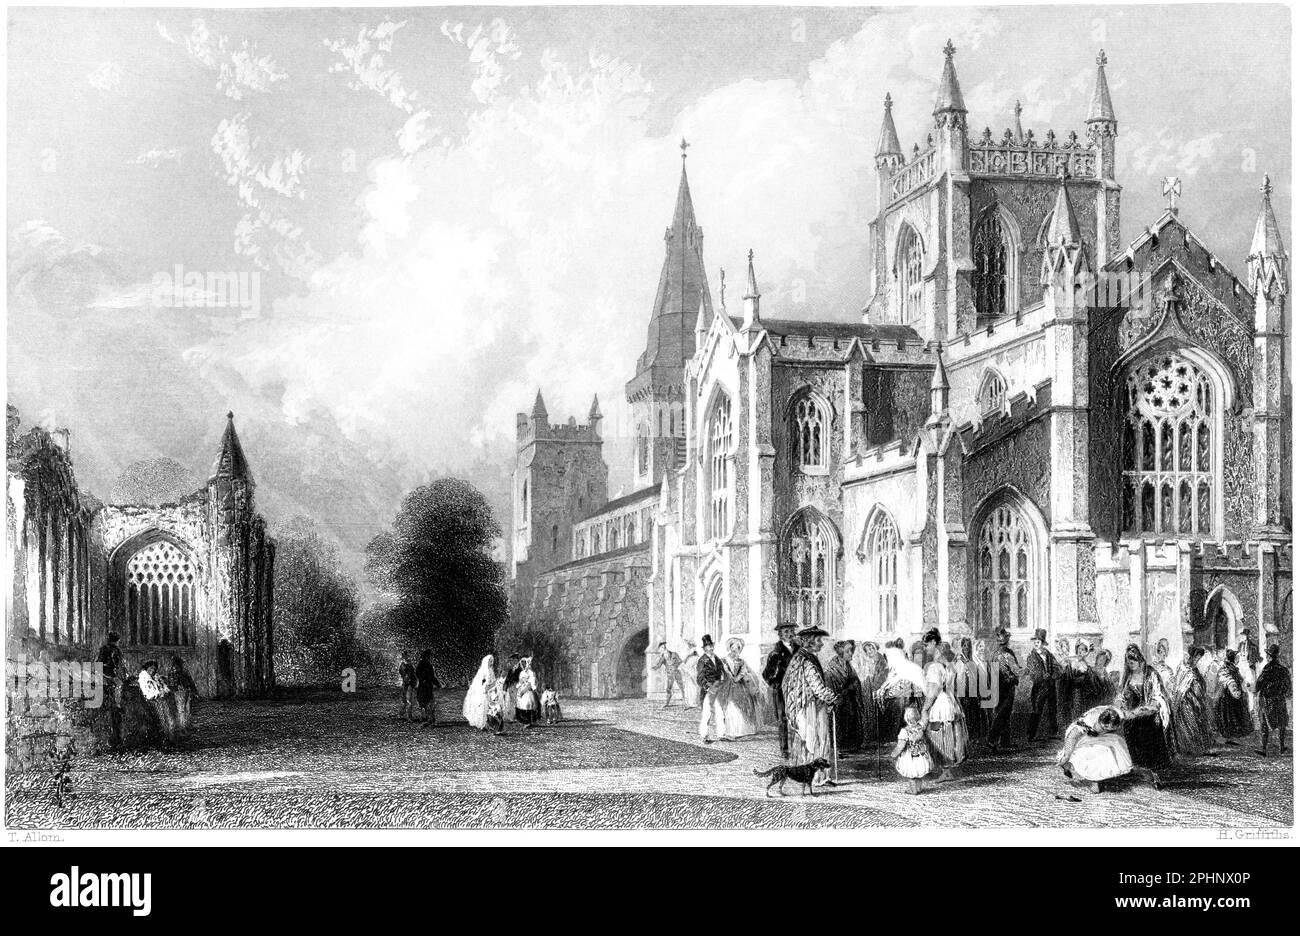 Eine Gravur von The New Church and Abbey, Dunfermline, Fifeshire, Schottland, UK, gescannt mit hoher Auflösung aus einem 1840 gedruckten Buch. Stockfoto